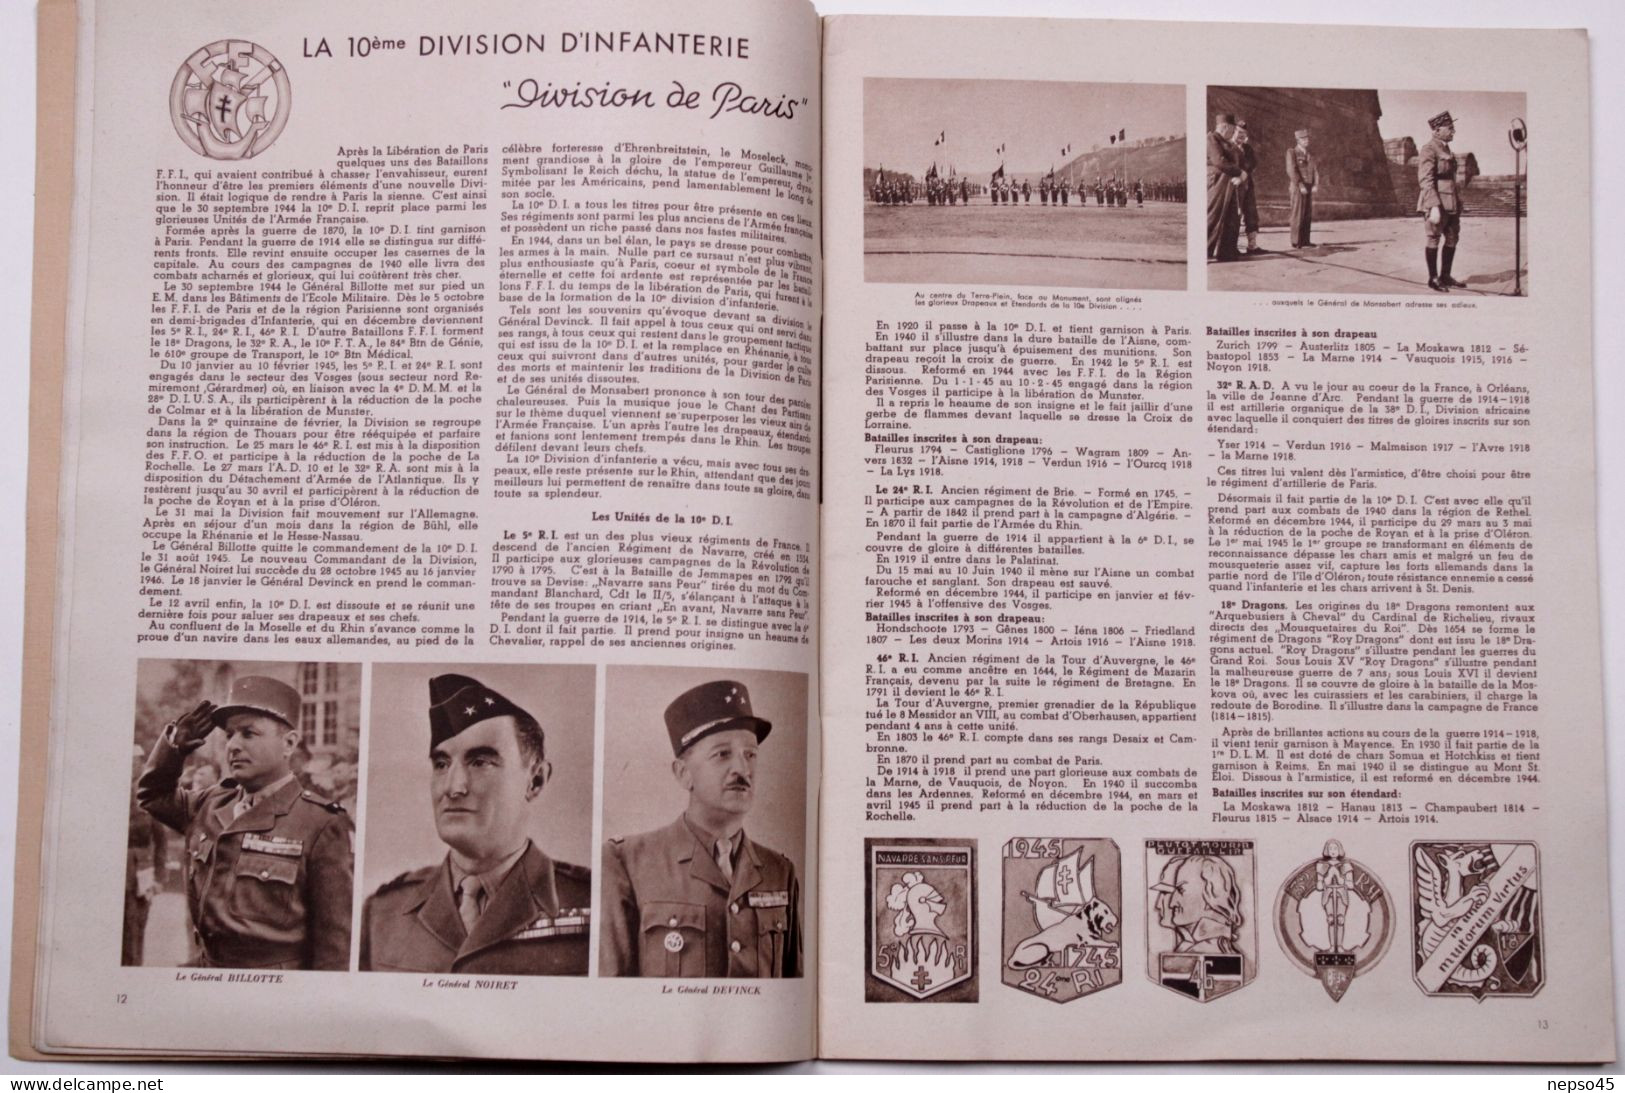 Revue d'Information des Troupes Françaises d'Occupation en Allemagne.Anniversaire Capitulation du Reich à Baden-Baden.